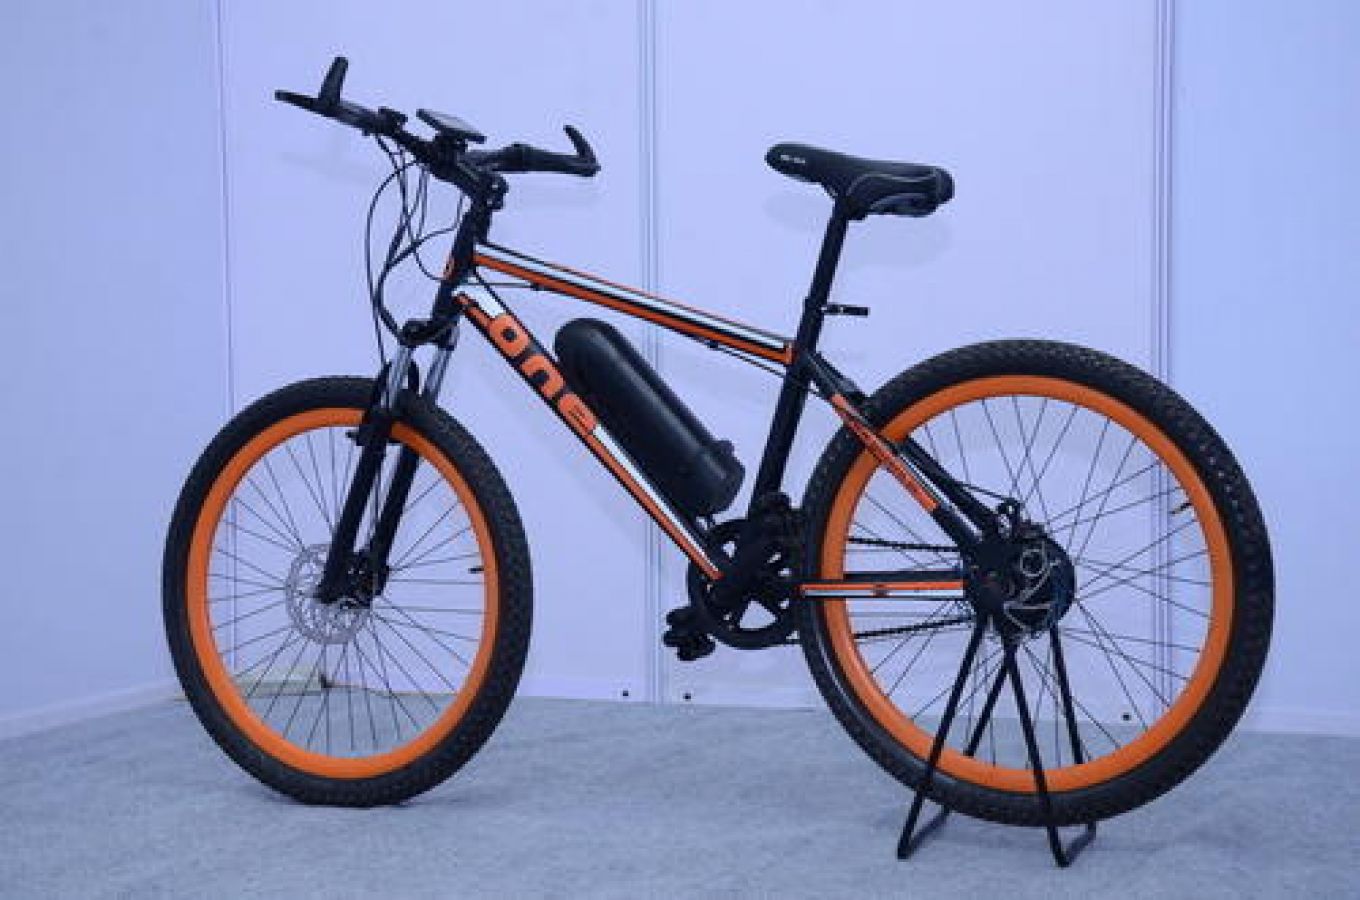 तीन शानदार इलेक्ट्रिक साइकिल, जानिए फीचर